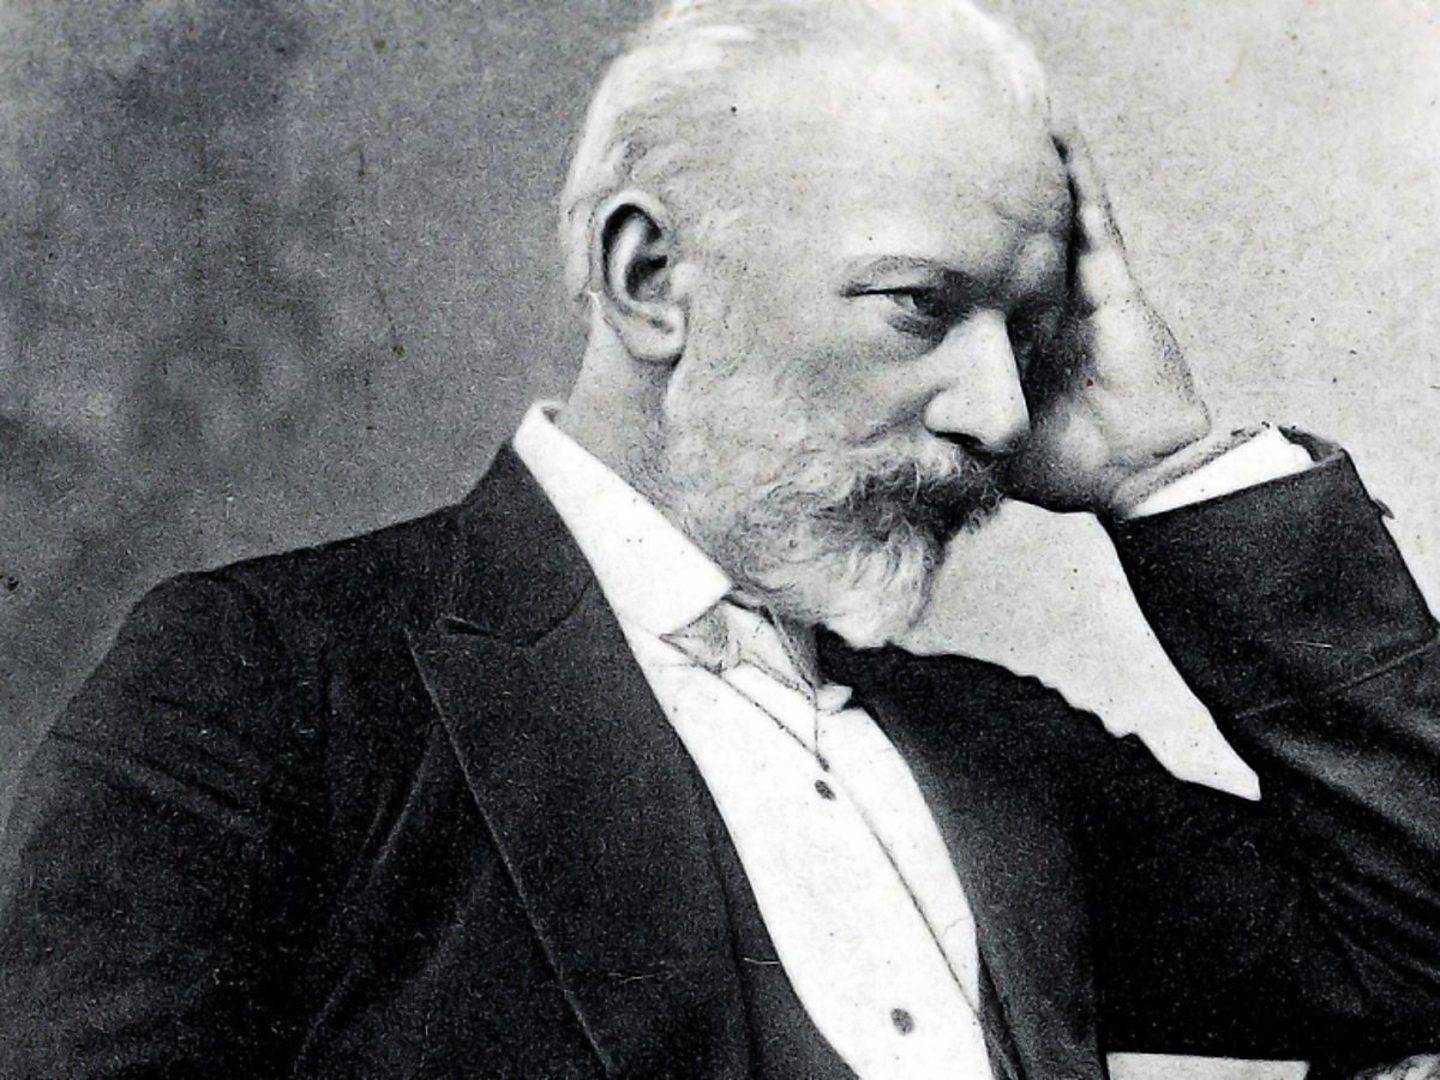 October 28 -- Tchaikovsky, Symphony No. 6 ("Pathetique")